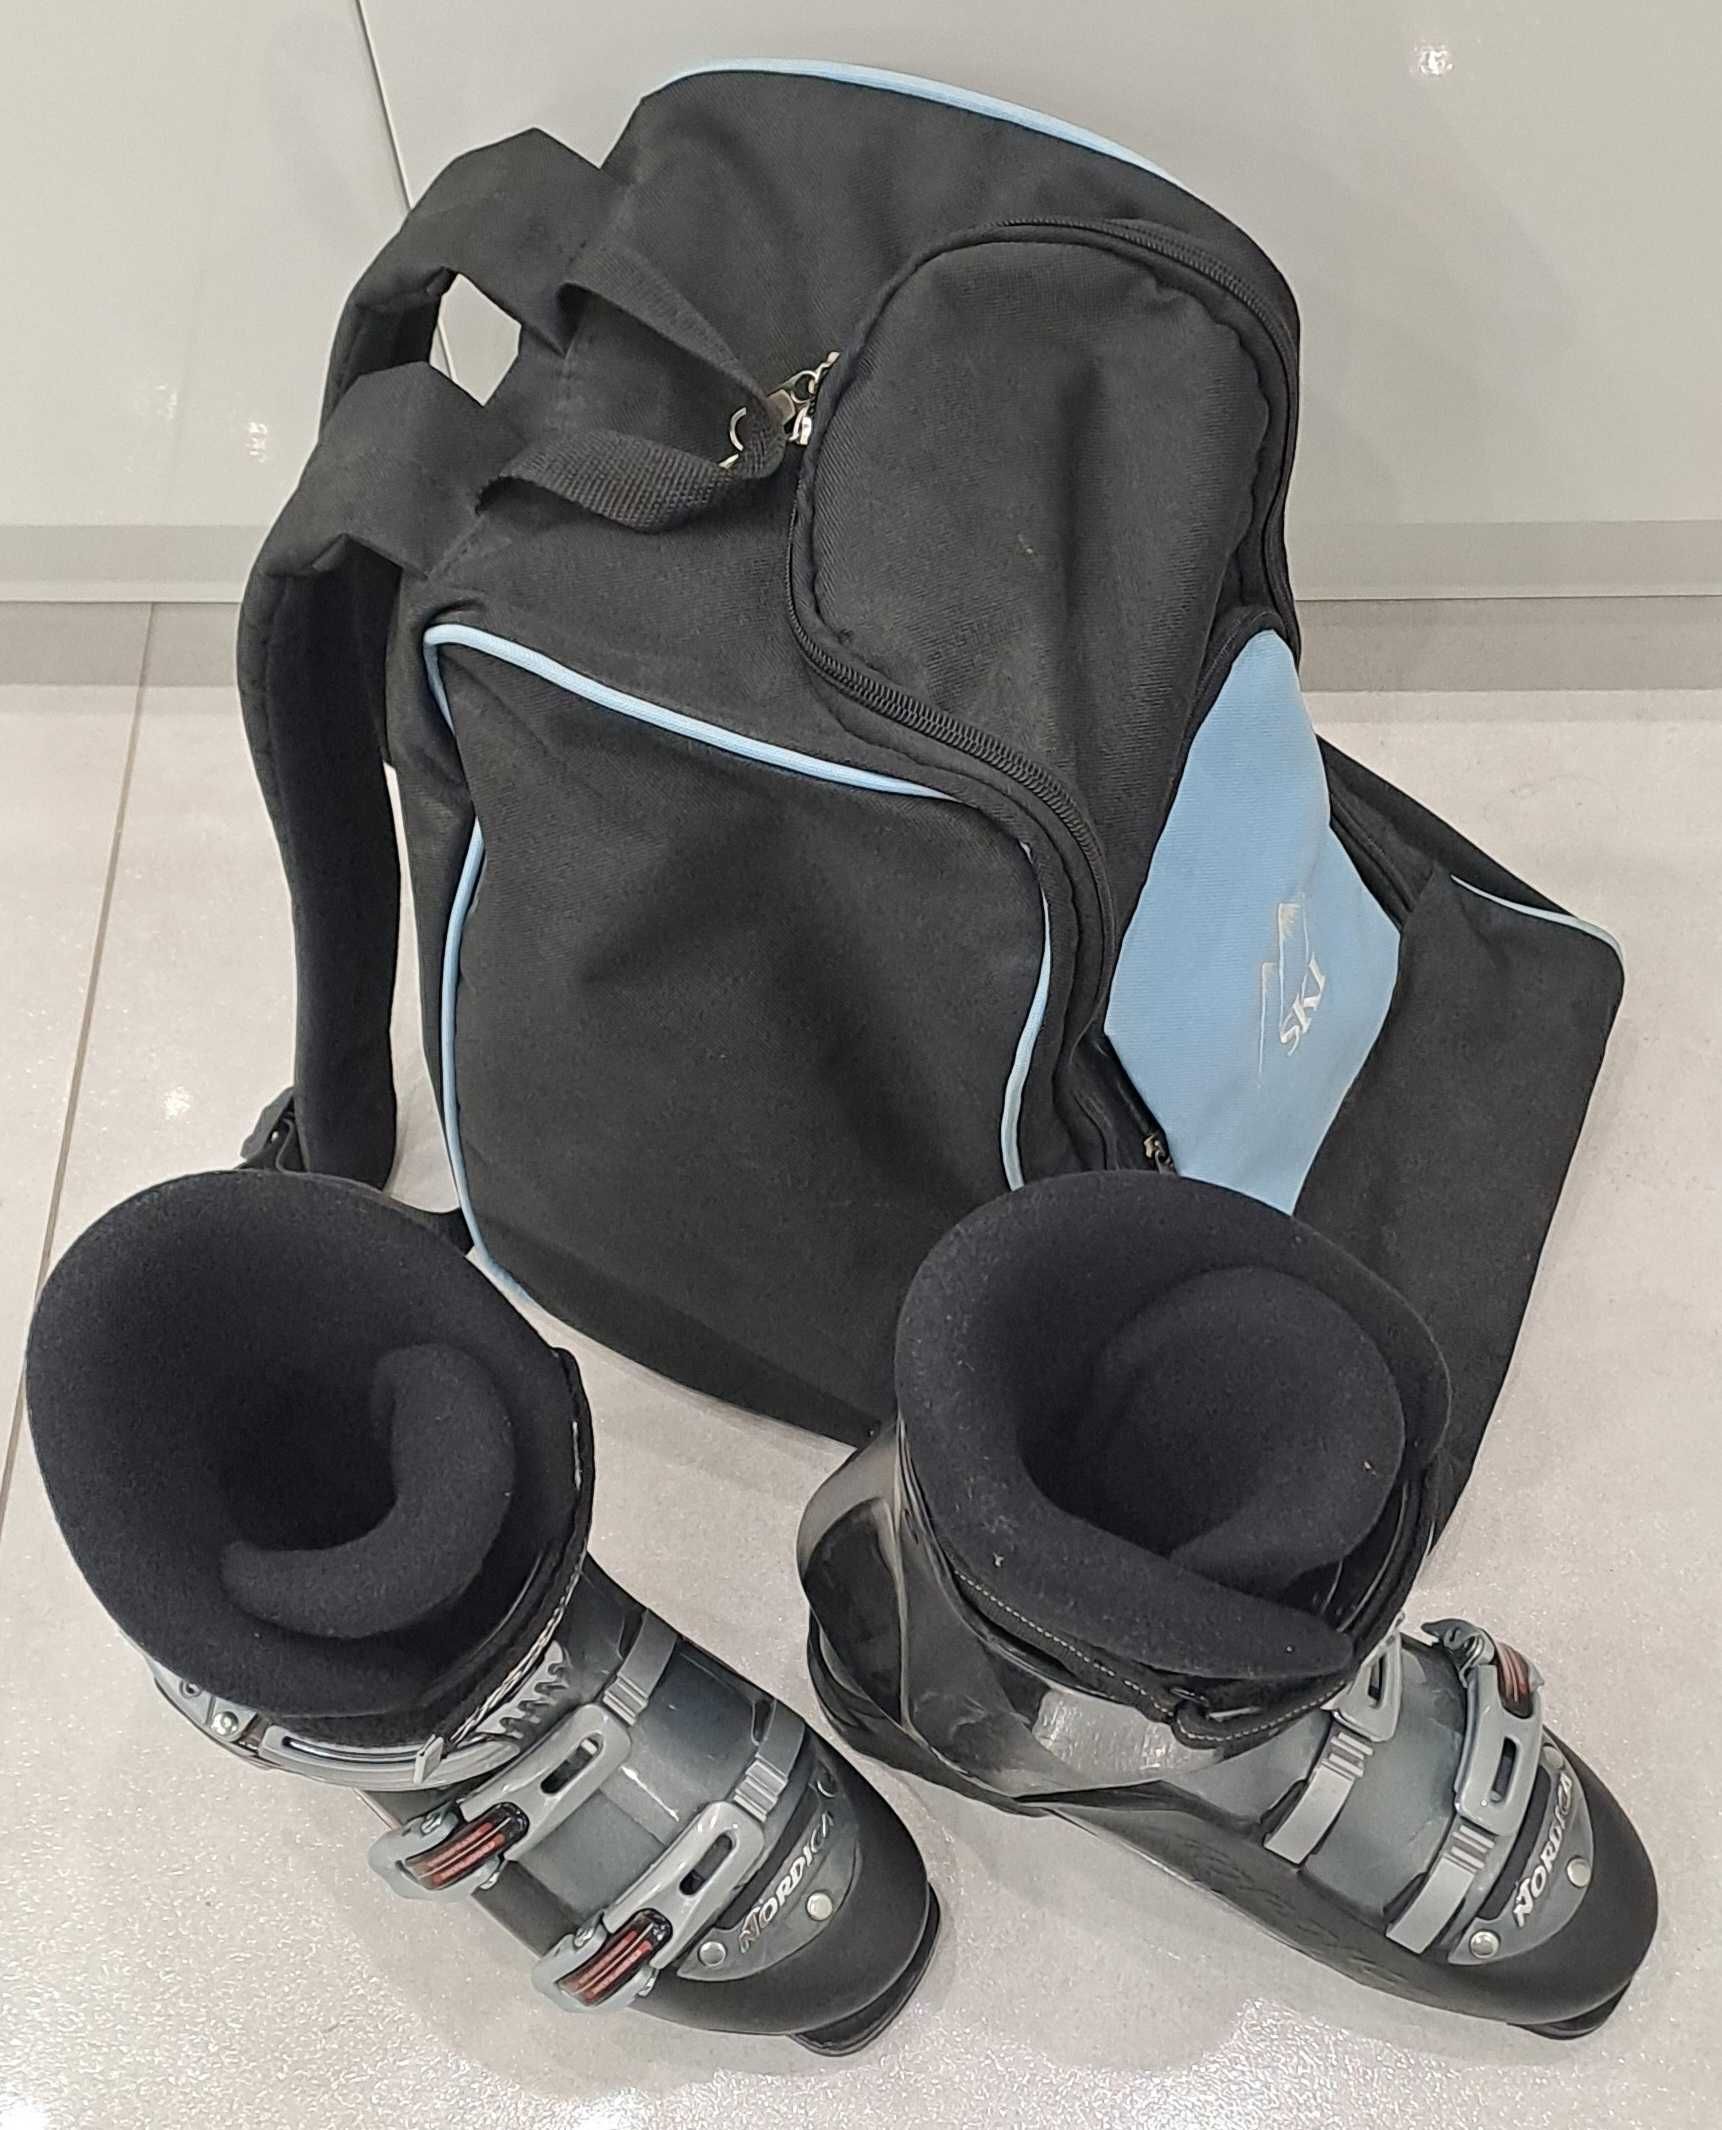 Buty narciarskie NORDICA, model BXR plus pokrowiec/plecak na buty